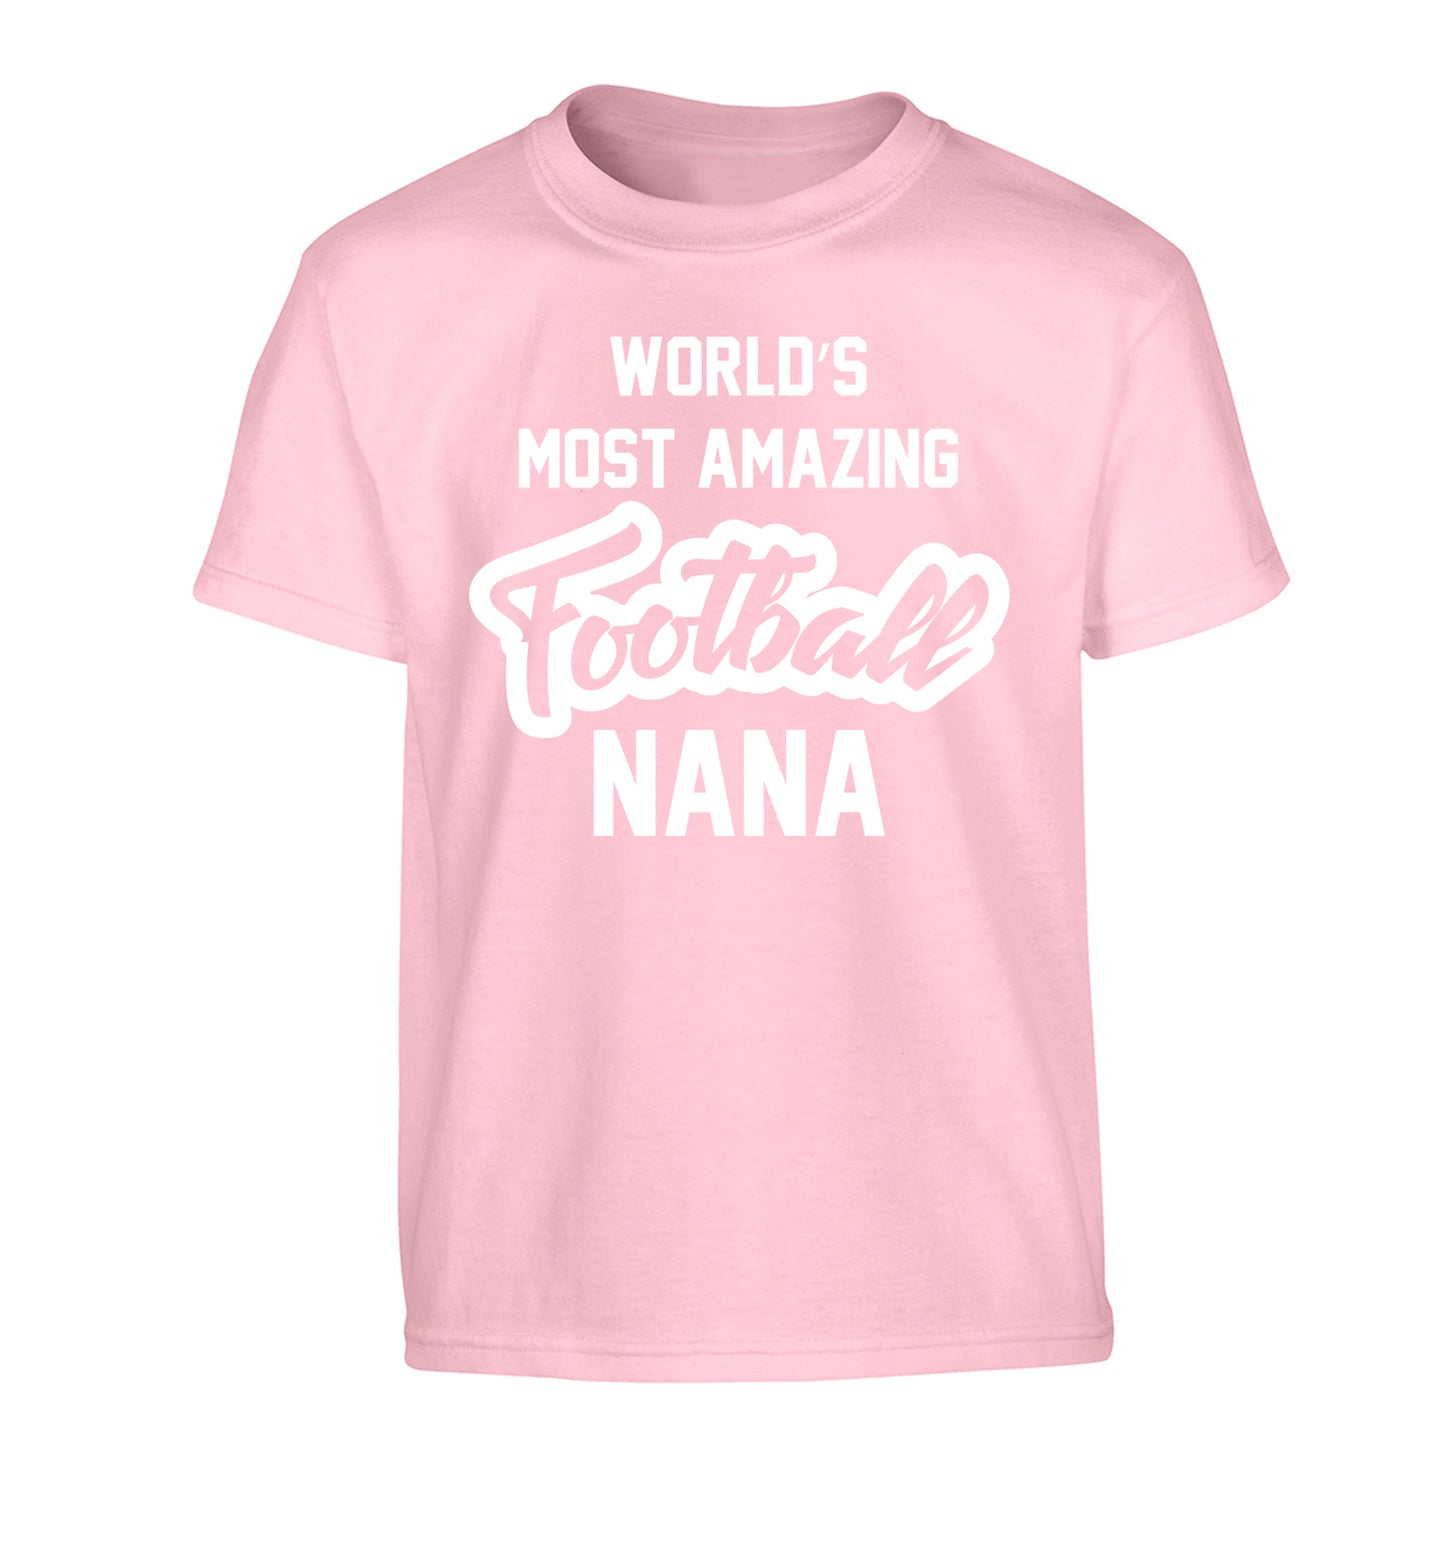 Worlds most amazing football nana Children's light pink Tshirt 12-14 Years